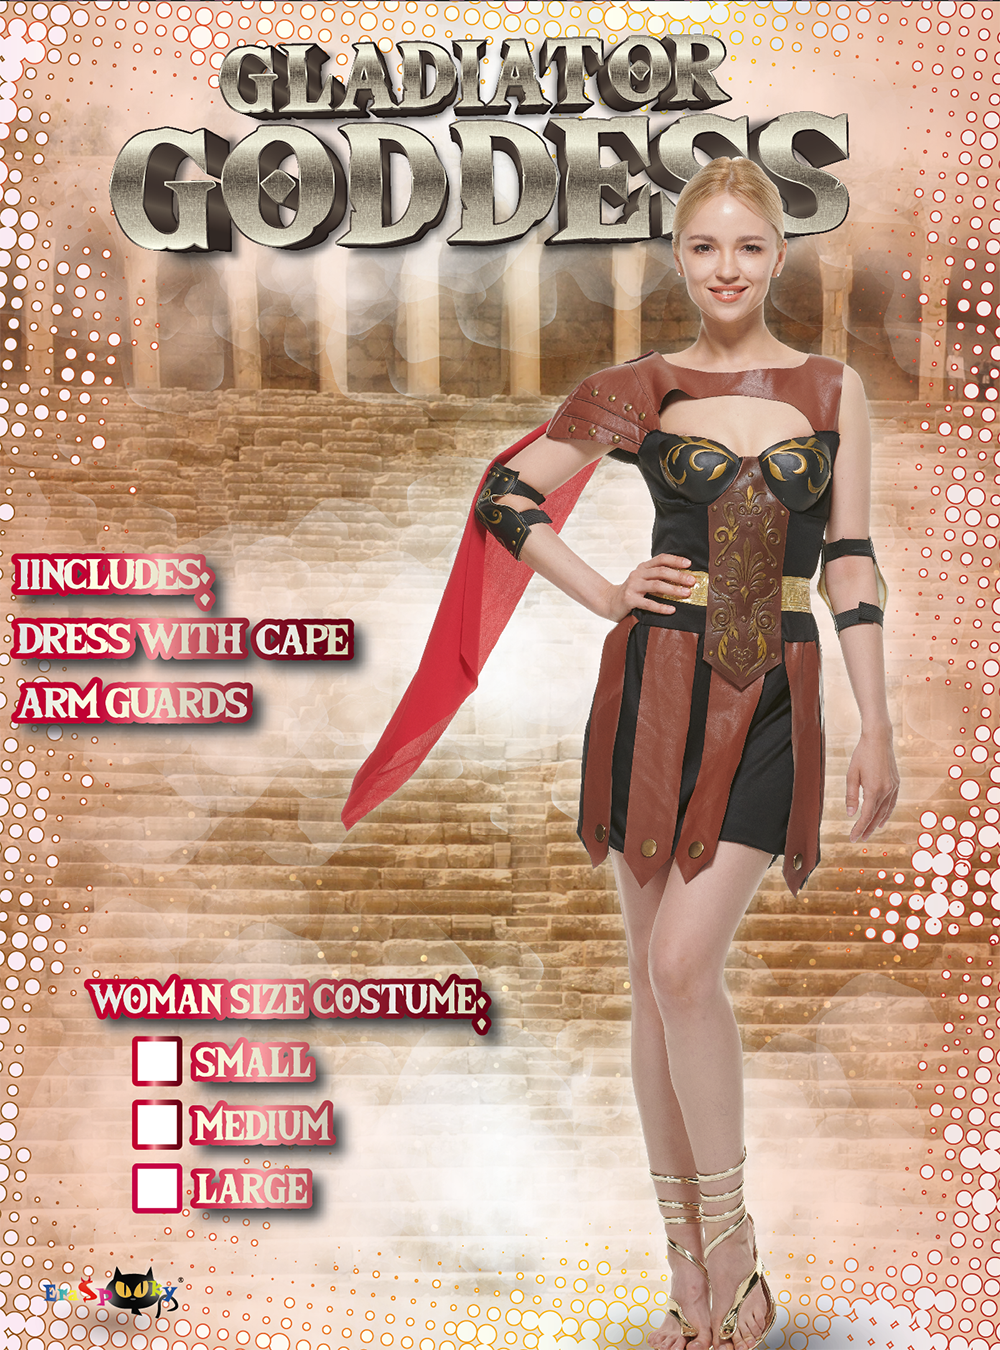 Disfraz de diosa gladiador Eraspooky para mujer, princesa guerrera, juego de rol de Halloween